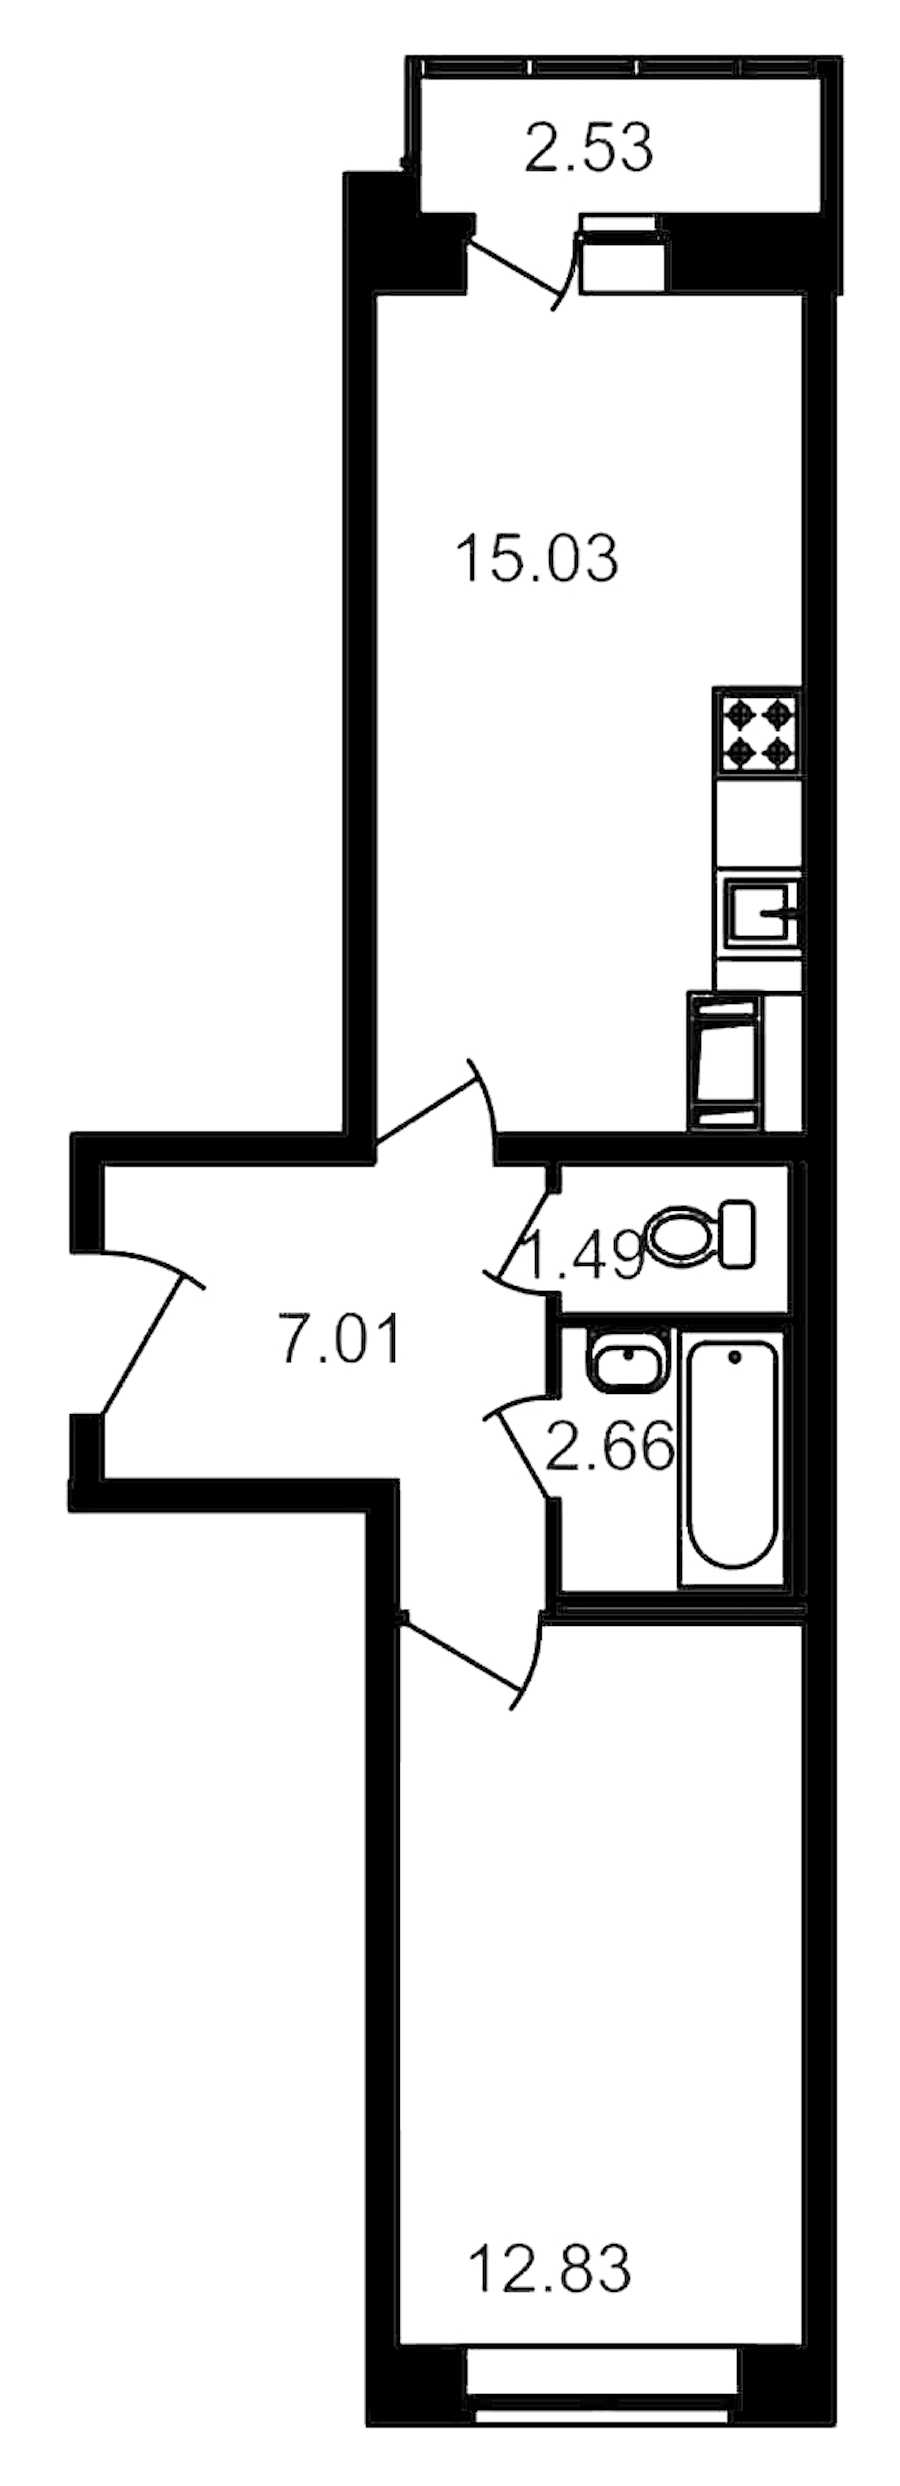 Однокомнатная квартира в ЦДС: площадь 40.35 м2 , этаж: 15 – купить в Санкт-Петербурге